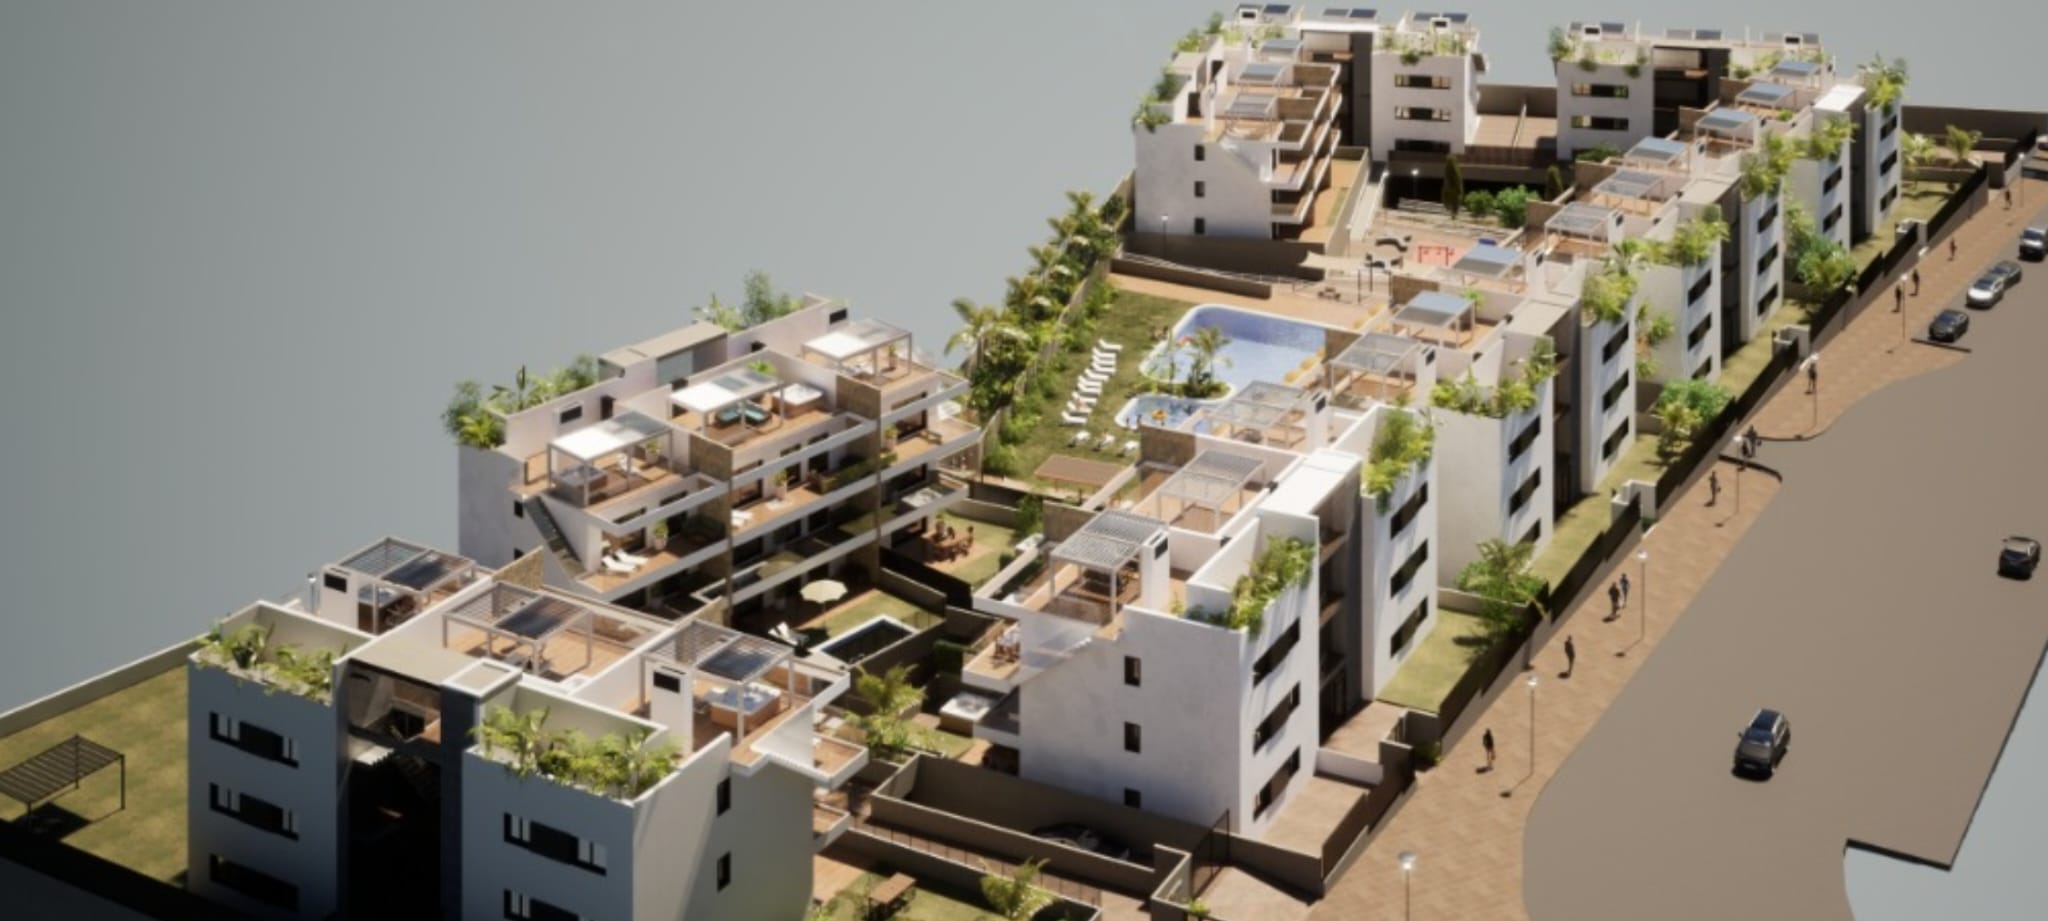 Finestrat: Lujosos apartamentos con una vista fenomenal sobre el horizonte de Benidorm